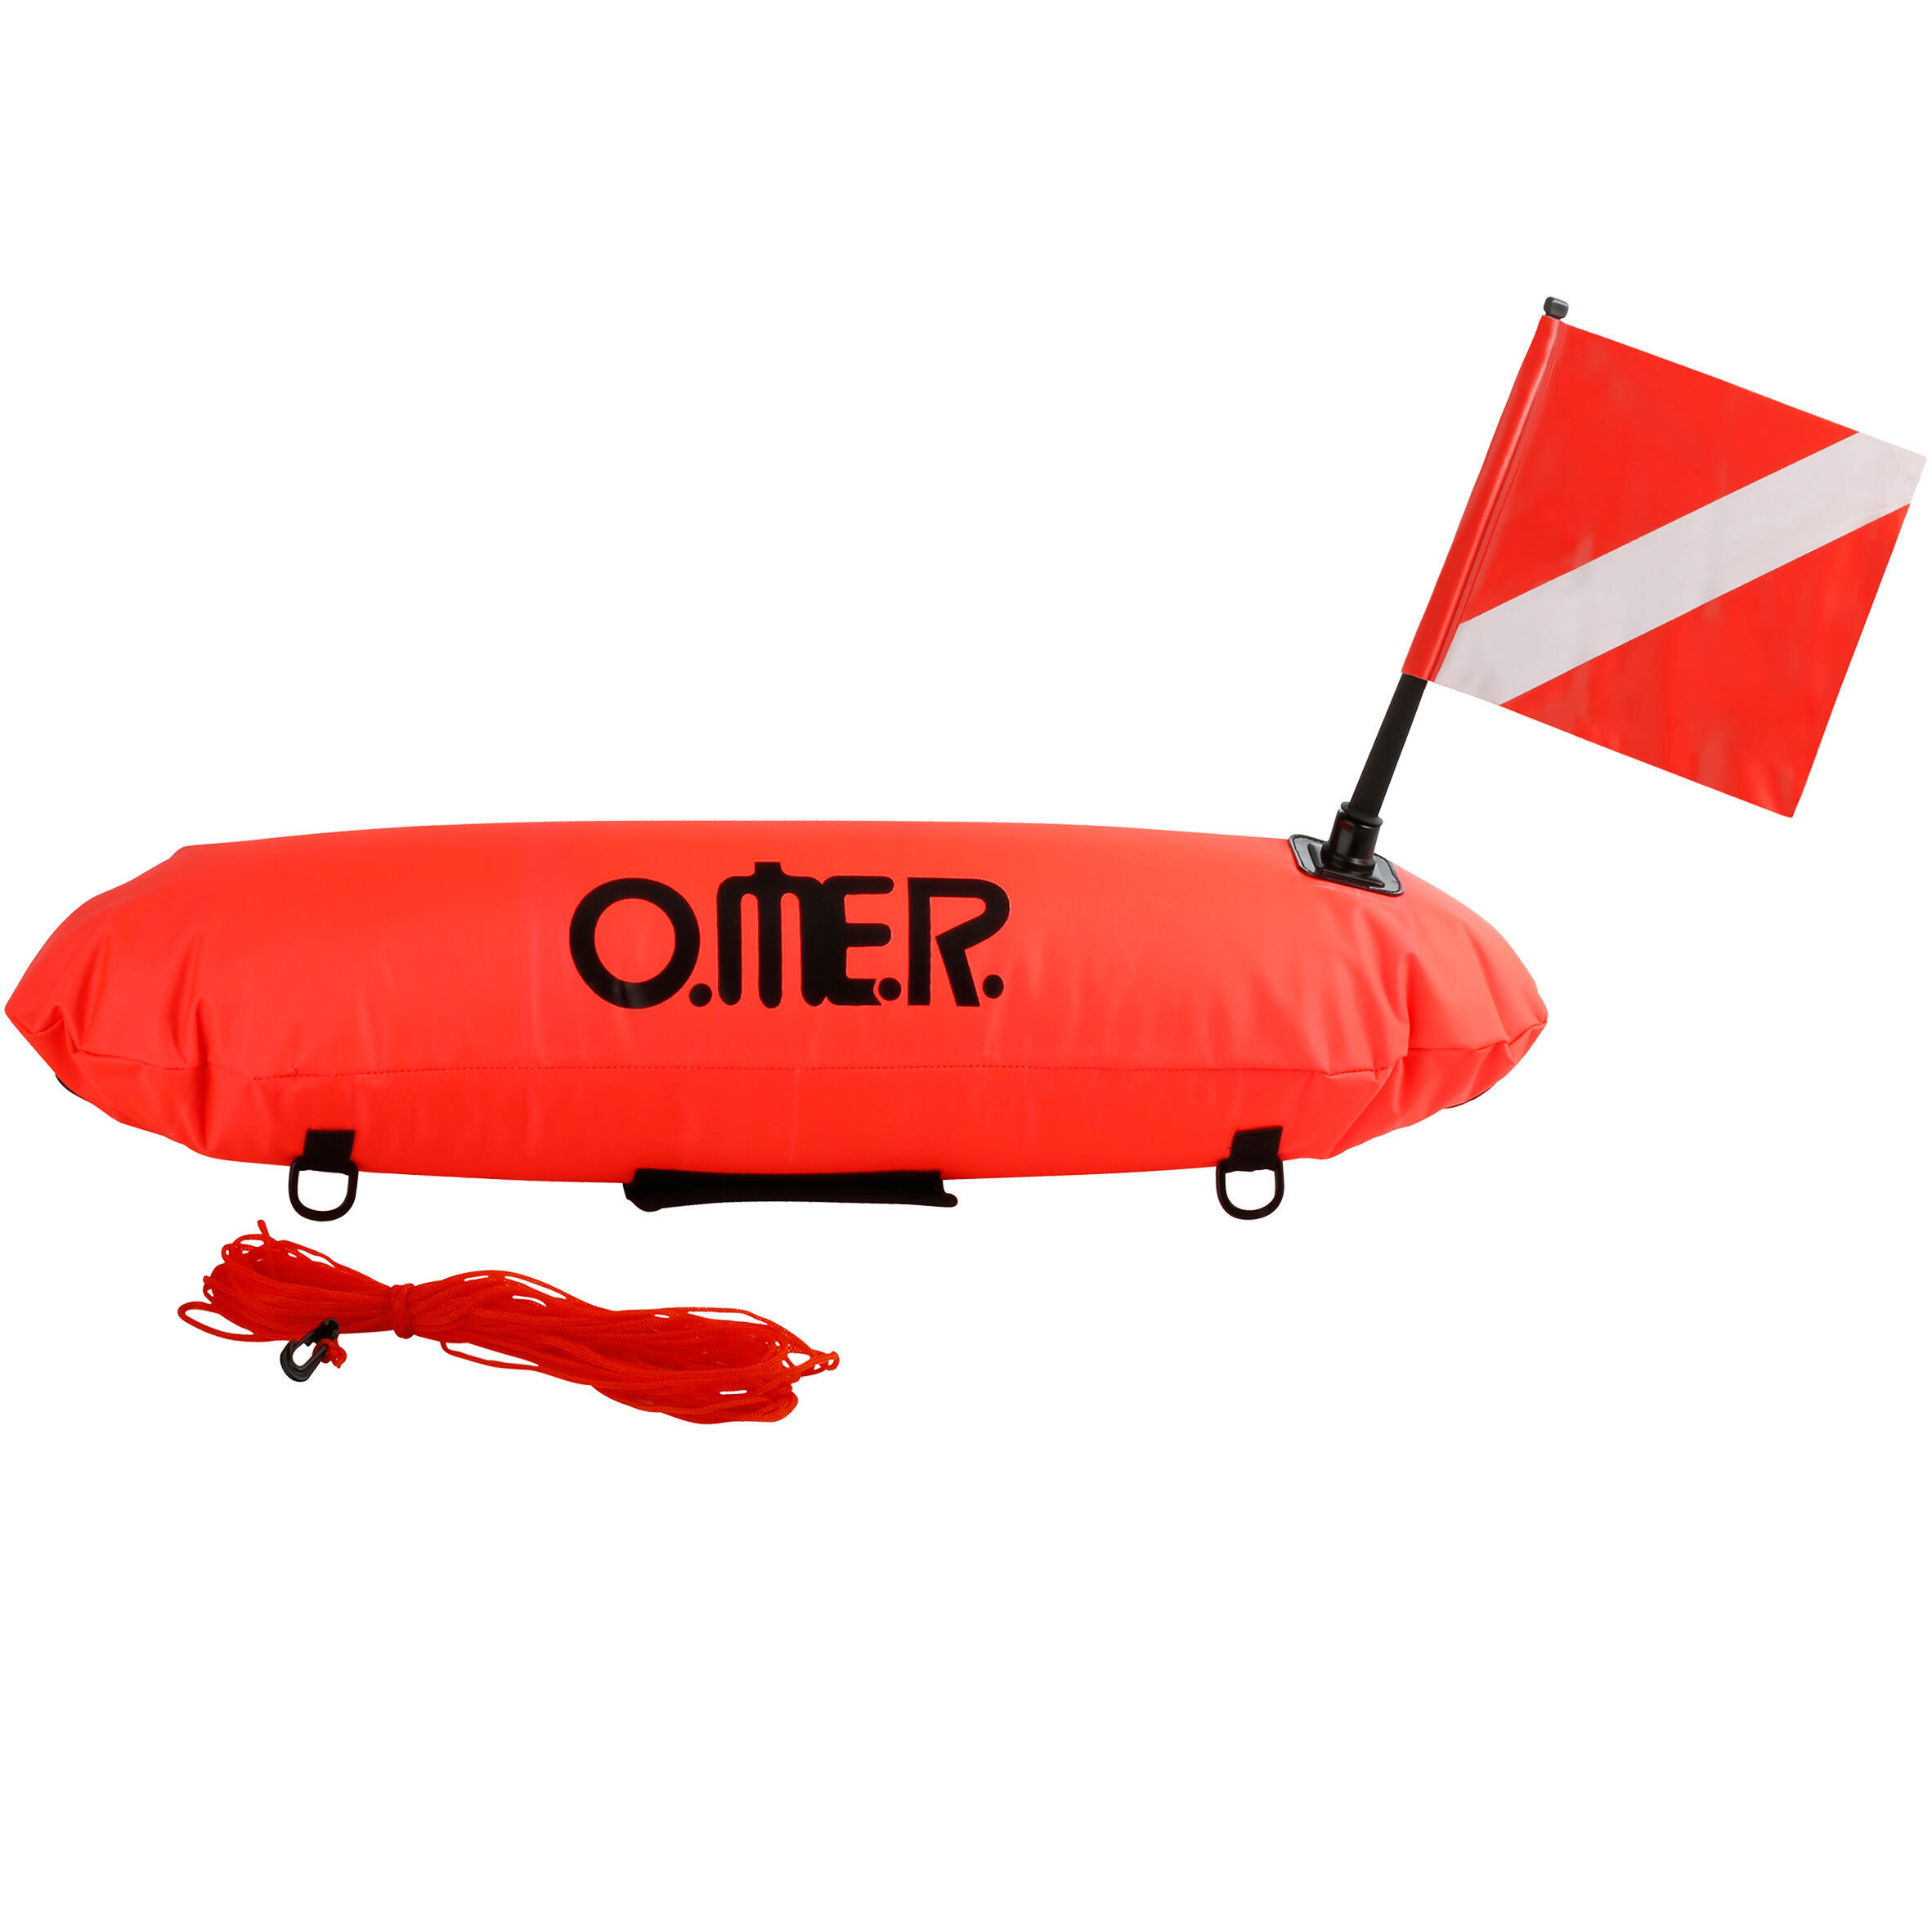 Сигнальный буй надувной длинный Freediving Master Torpedo OMER, оранжевый / черный буй marlin torpedo